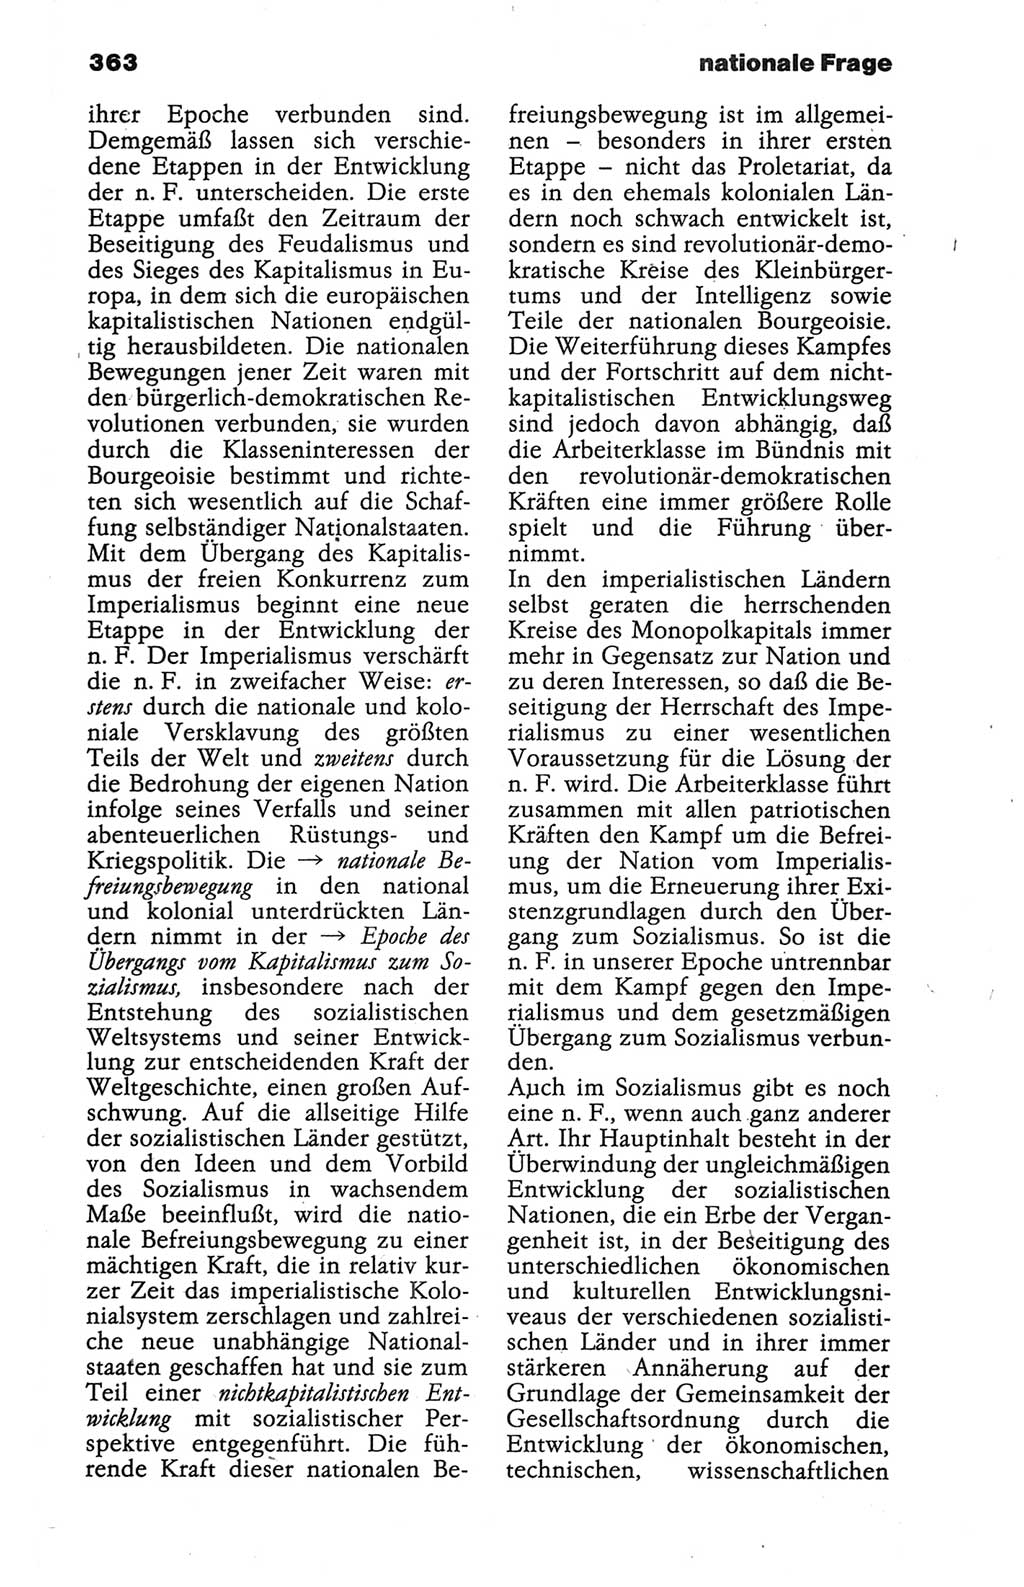 Wörterbuch der marxistisch-leninistischen Philosophie [Deutsche Demokratische Republik (DDR)] 1986, Seite 363 (Wb. ML Phil. DDR 1986, S. 363)